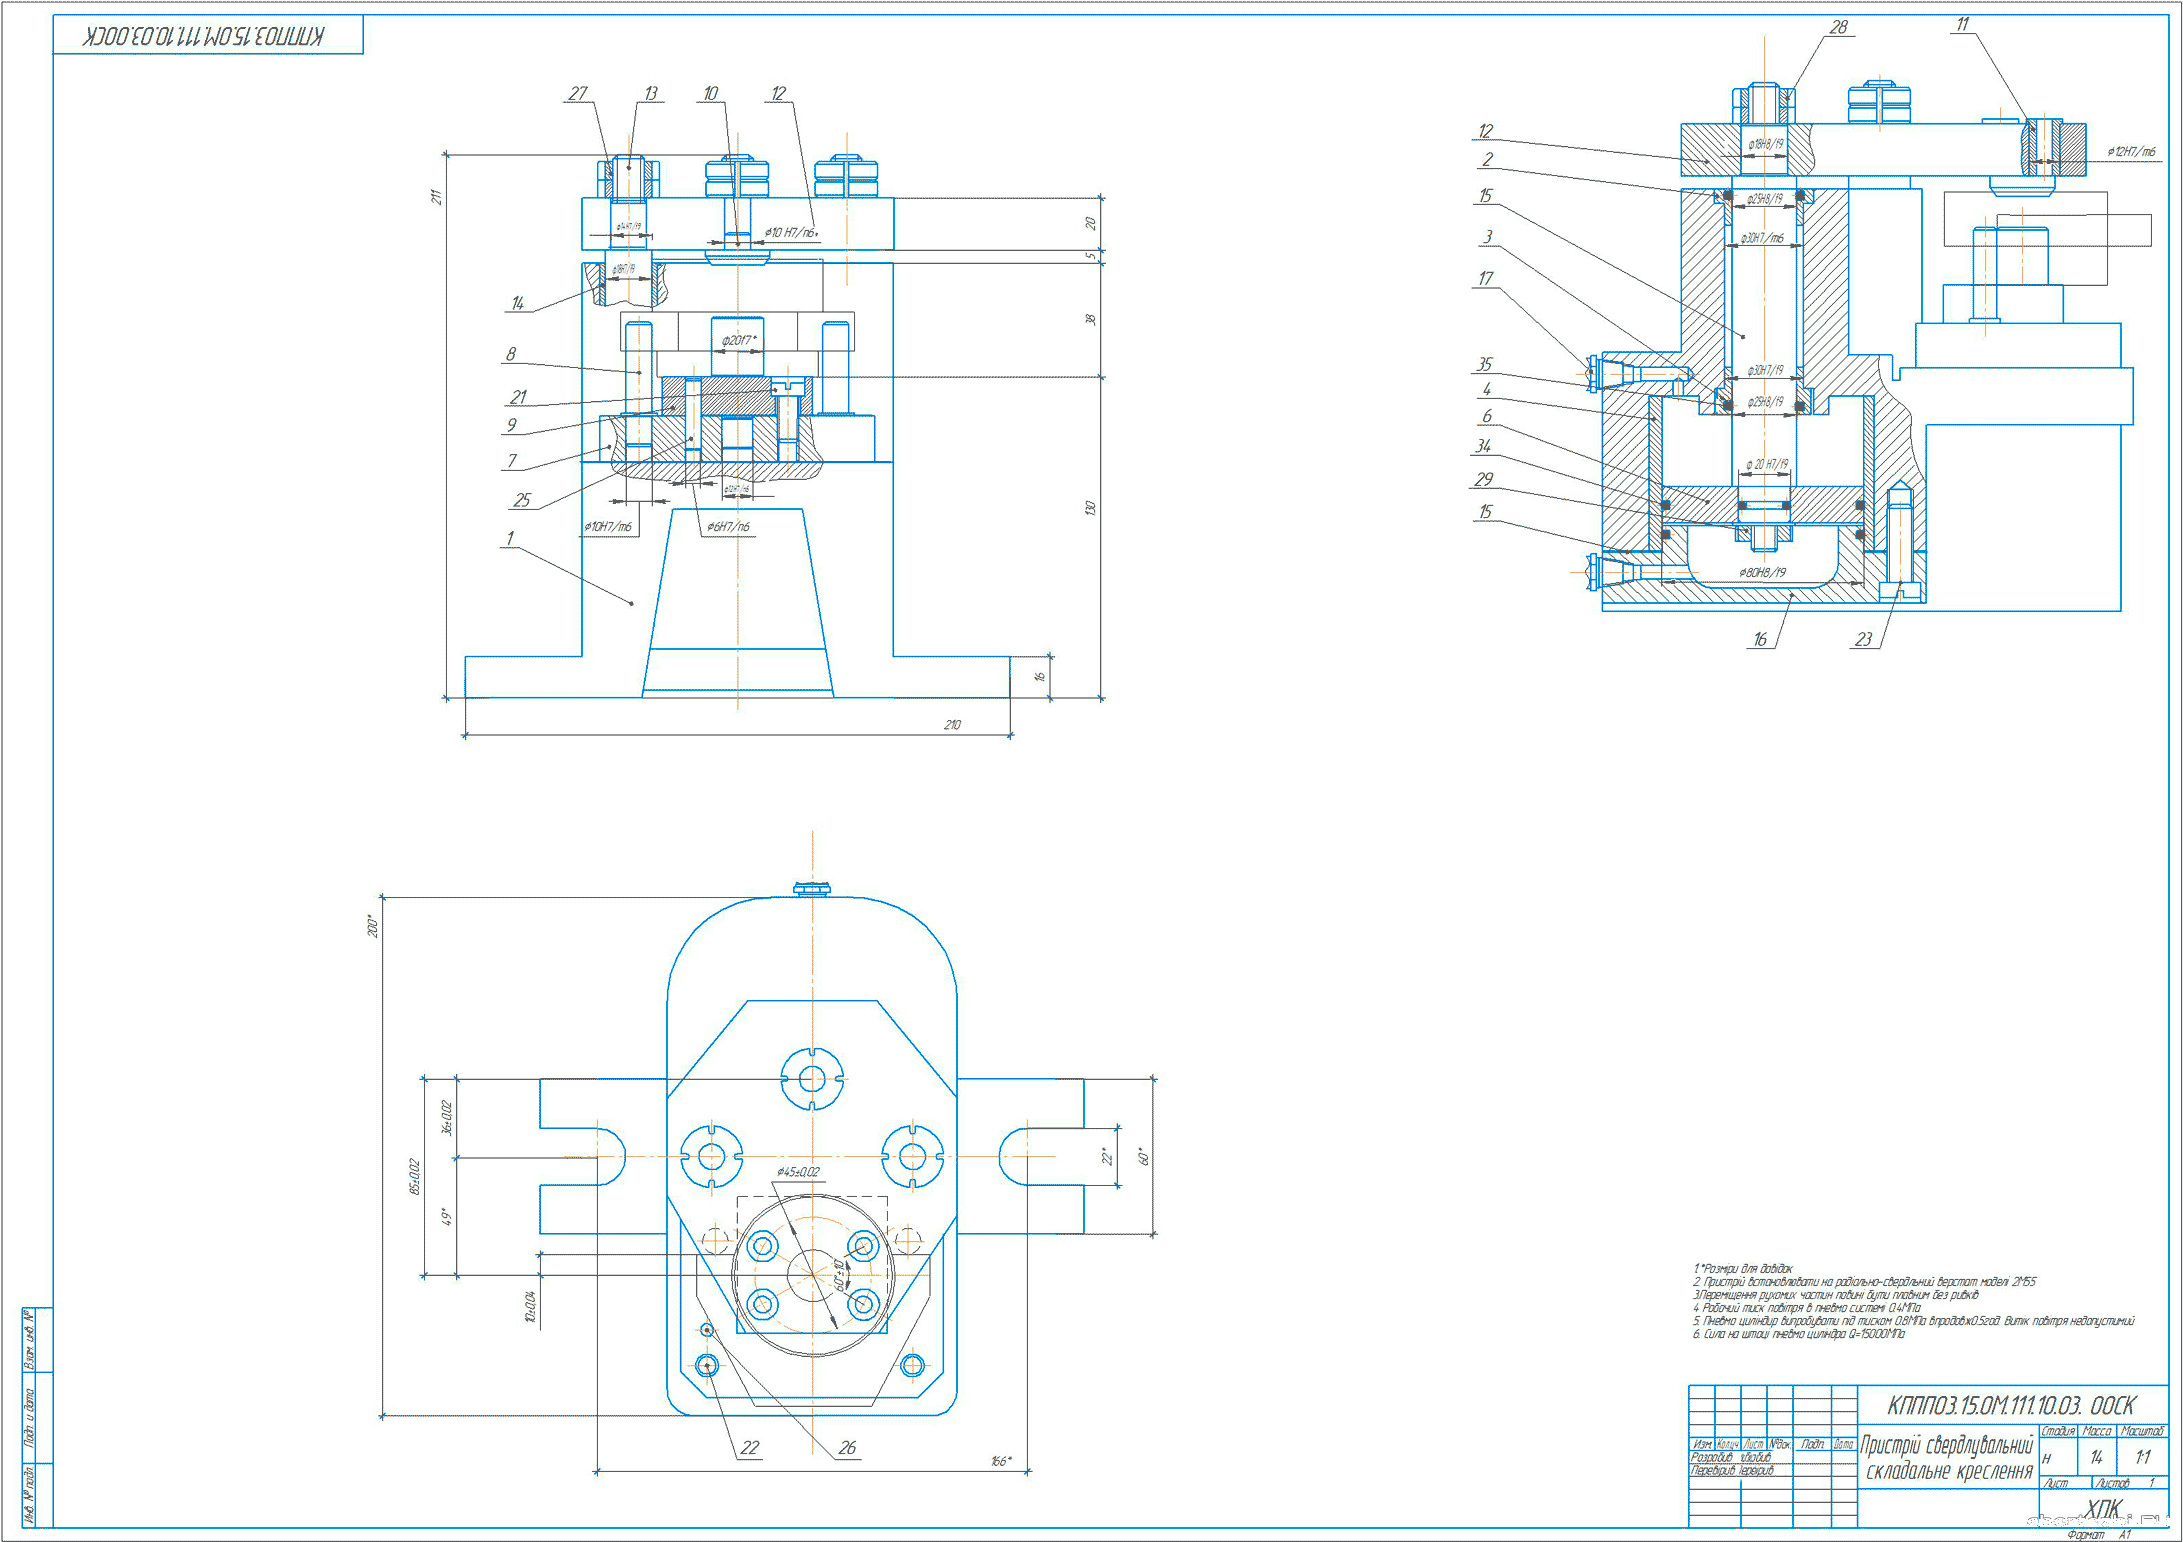 Курсовий проект (коледж) - Спроектувати верстатний пристрій для обробки отвору Д=12 мм деталі “Корпус” 7222- 1816